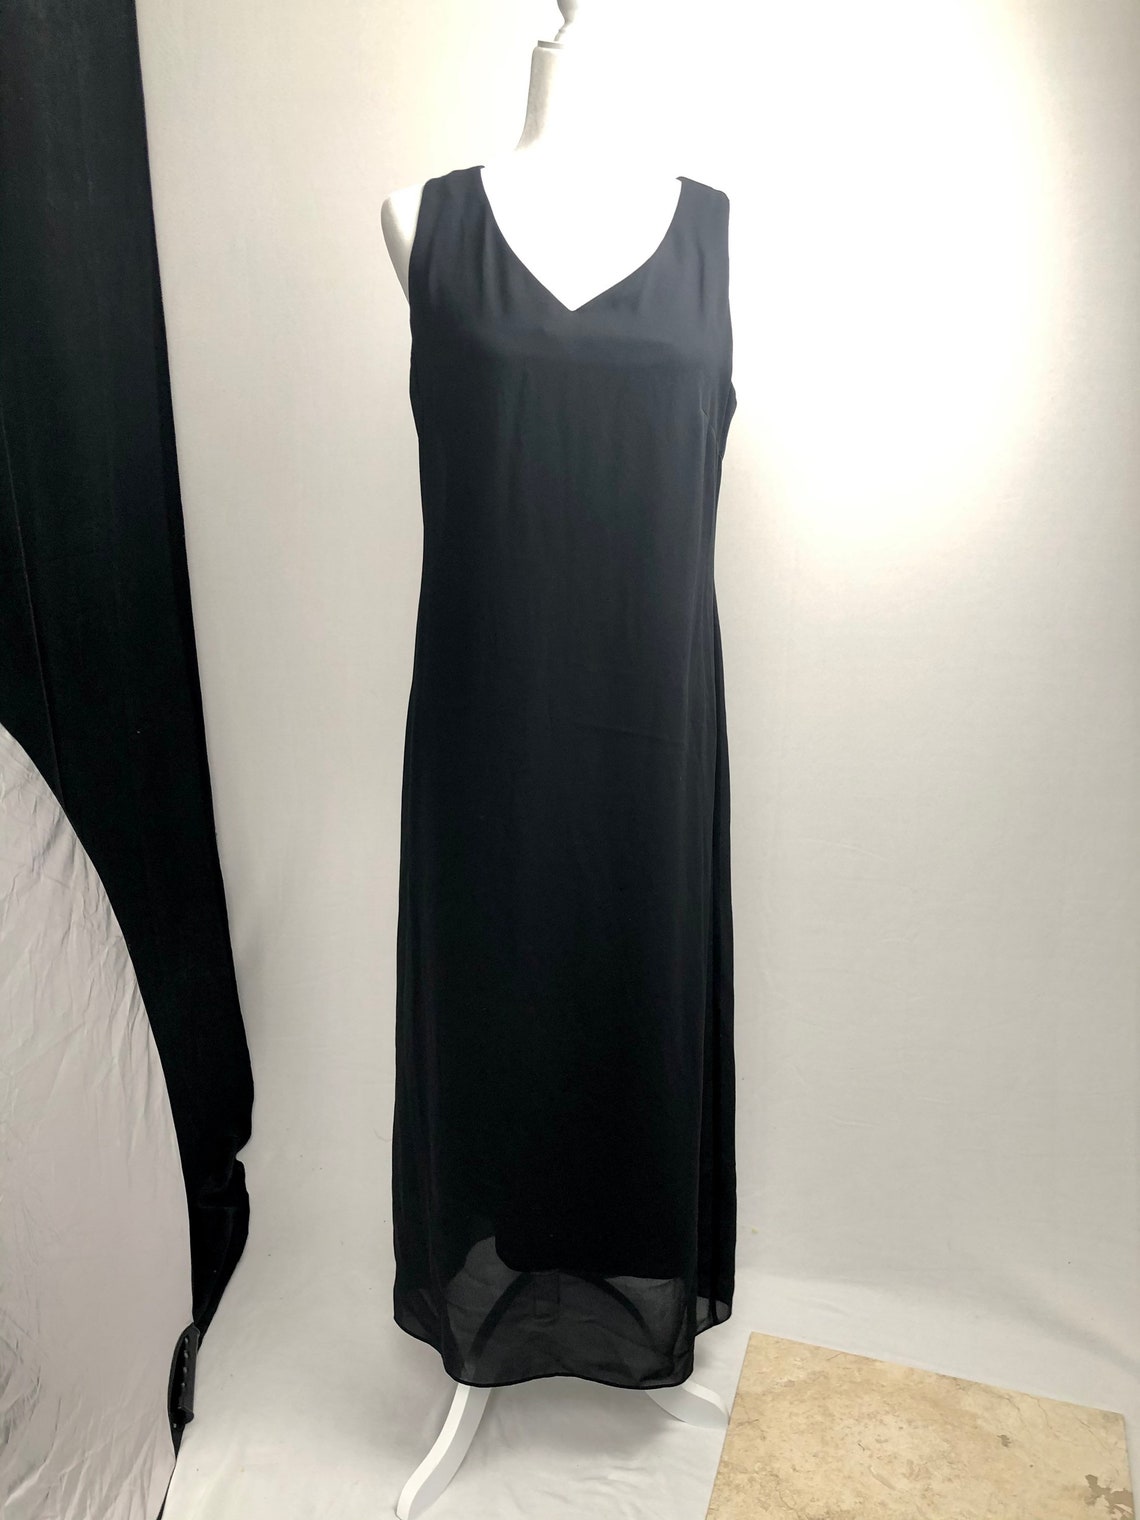 Vintage full length sleeveless black dress / vintage long | Etsy